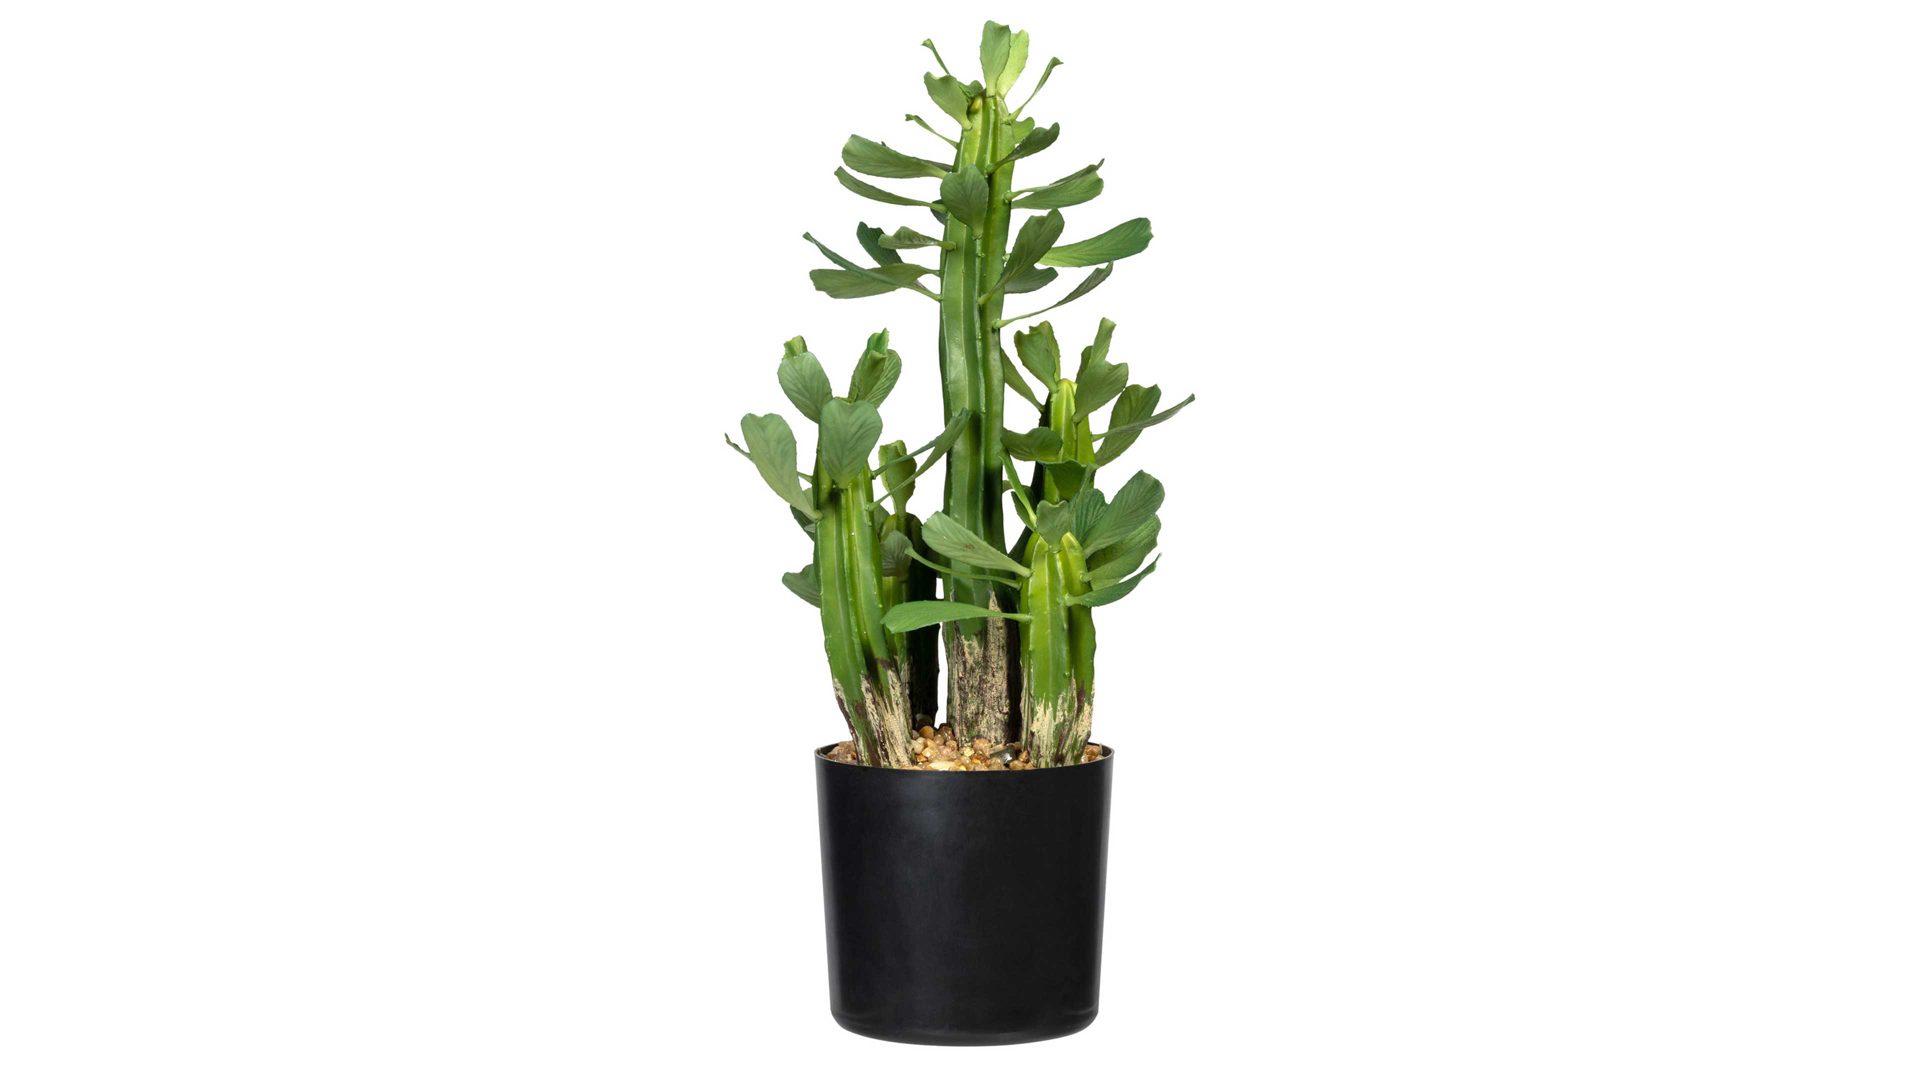 Pflanze Gasper aus Kunststoff in Grün Kaktus Euphorbia grüner Kunststoff & schwarzer Topf – Höhe ca. 40 cm